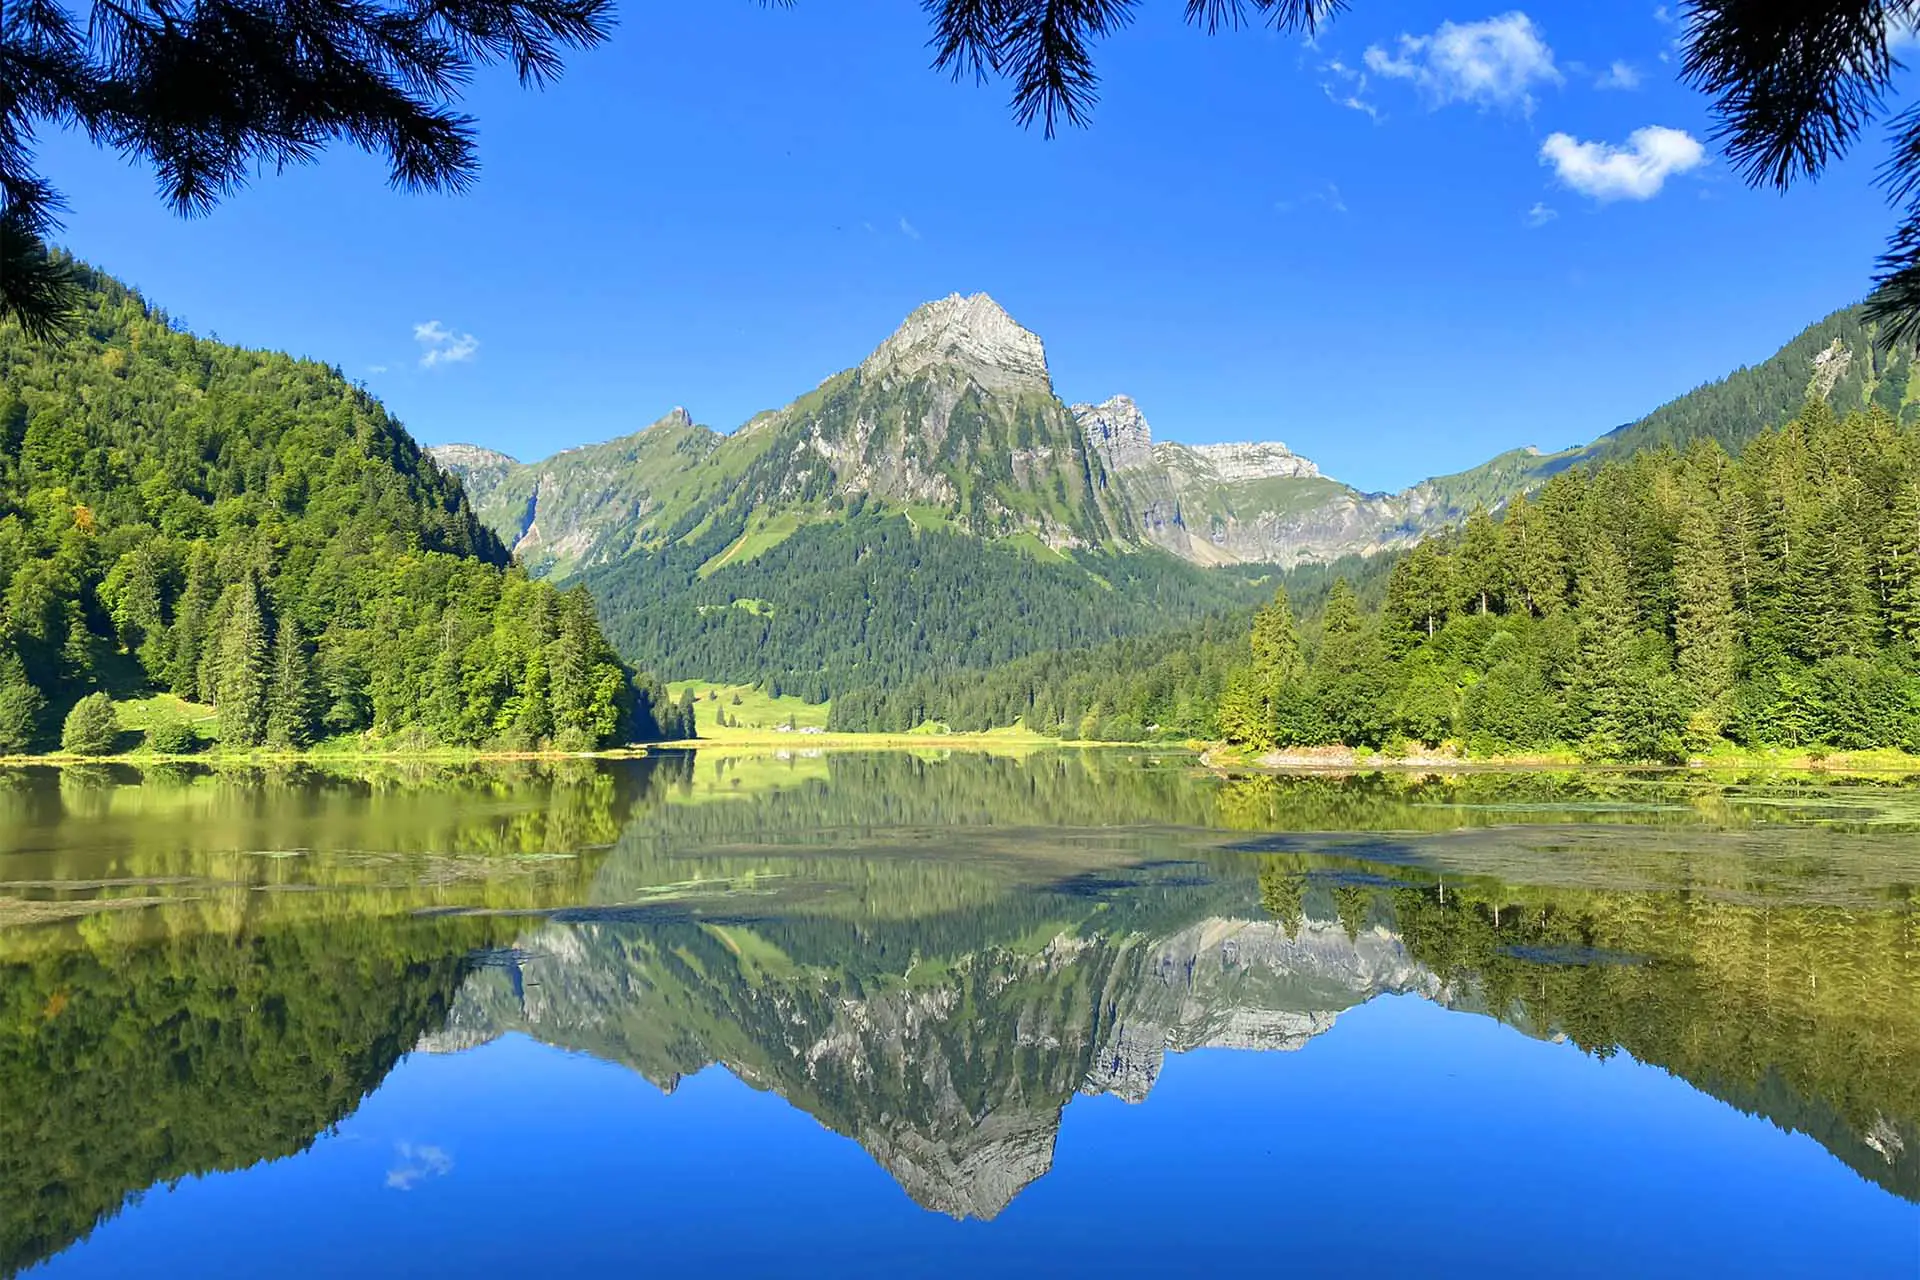 Stunning Lake Obersee